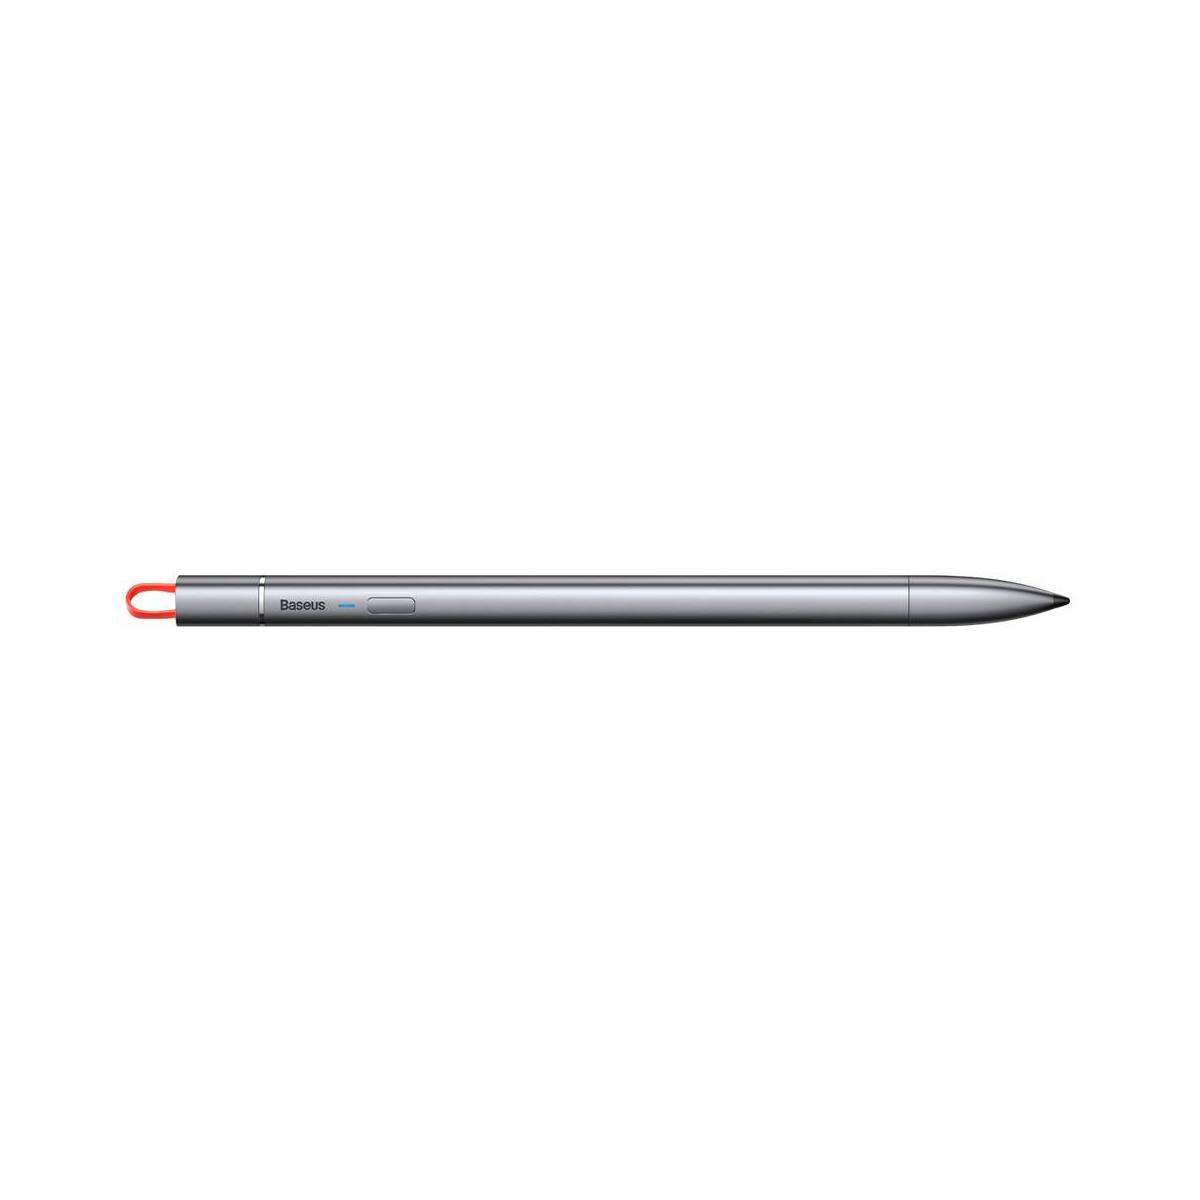 قلم لمسی باسئوس مدل ACSXB-A0G مناسب برای IPad